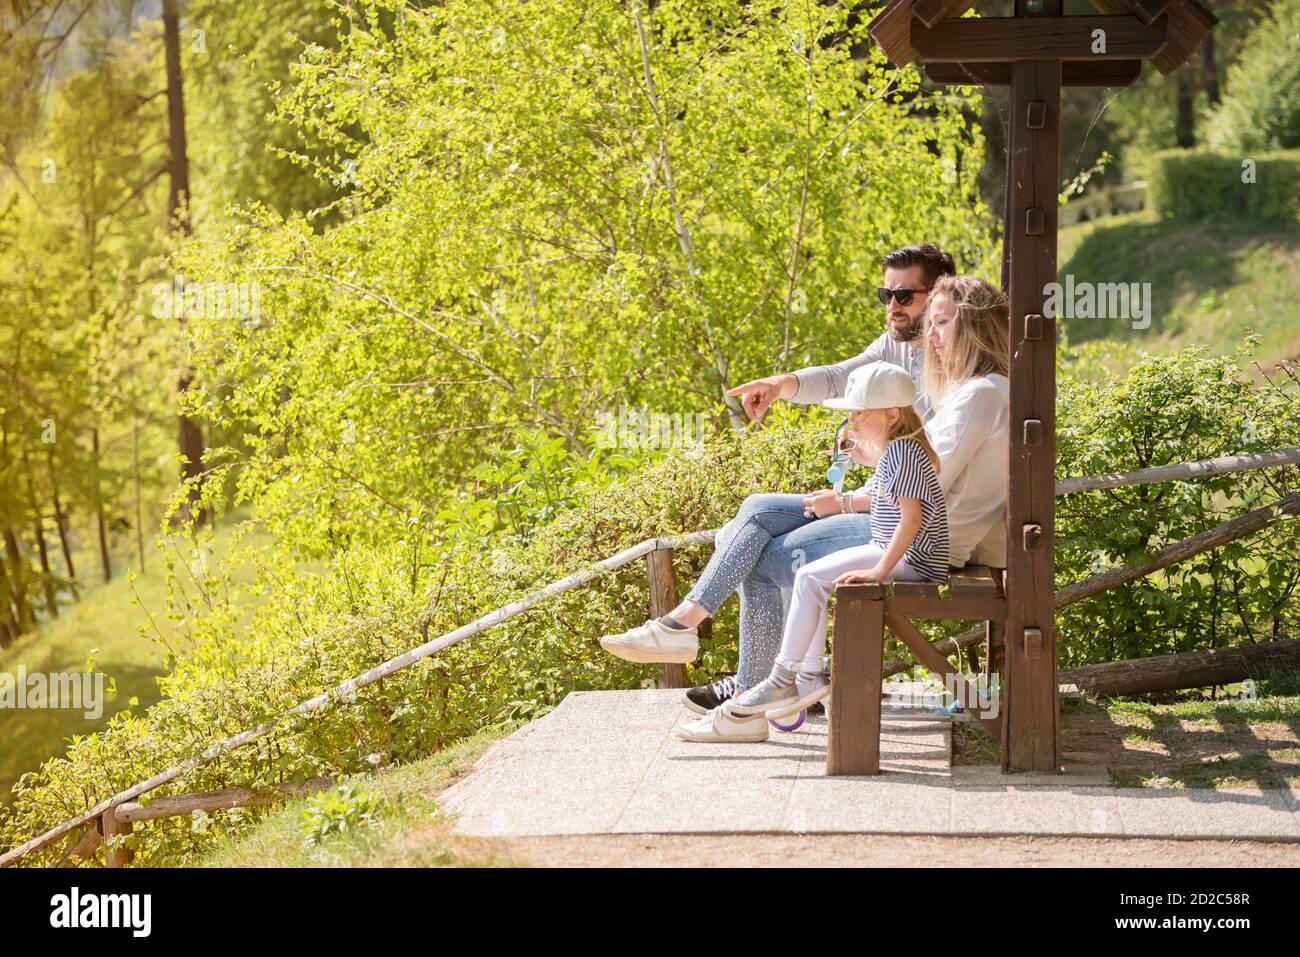 Le père, la mère et leur petite fille sont assis sur le banc en bois un jour de printemps ensoleillé. Banque D'Images